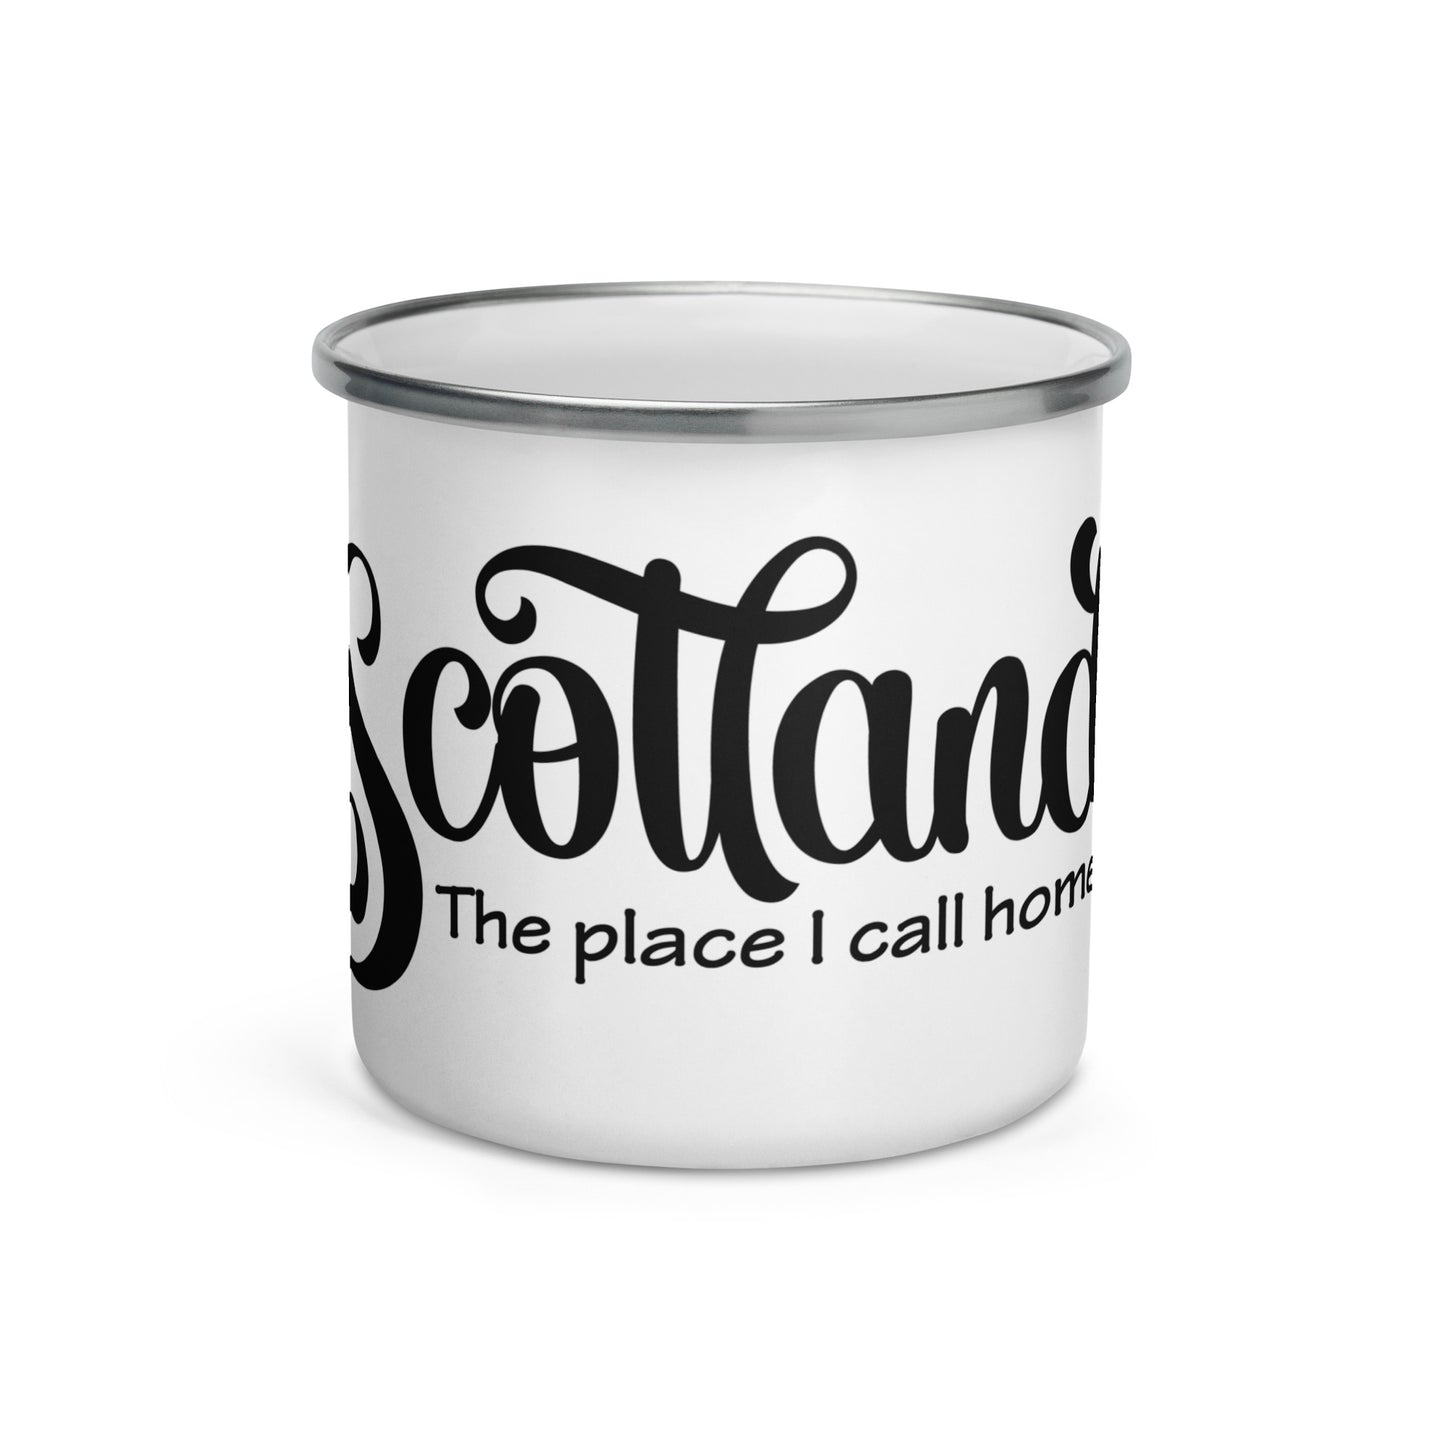 Scotland the place I call home Enamel Mug